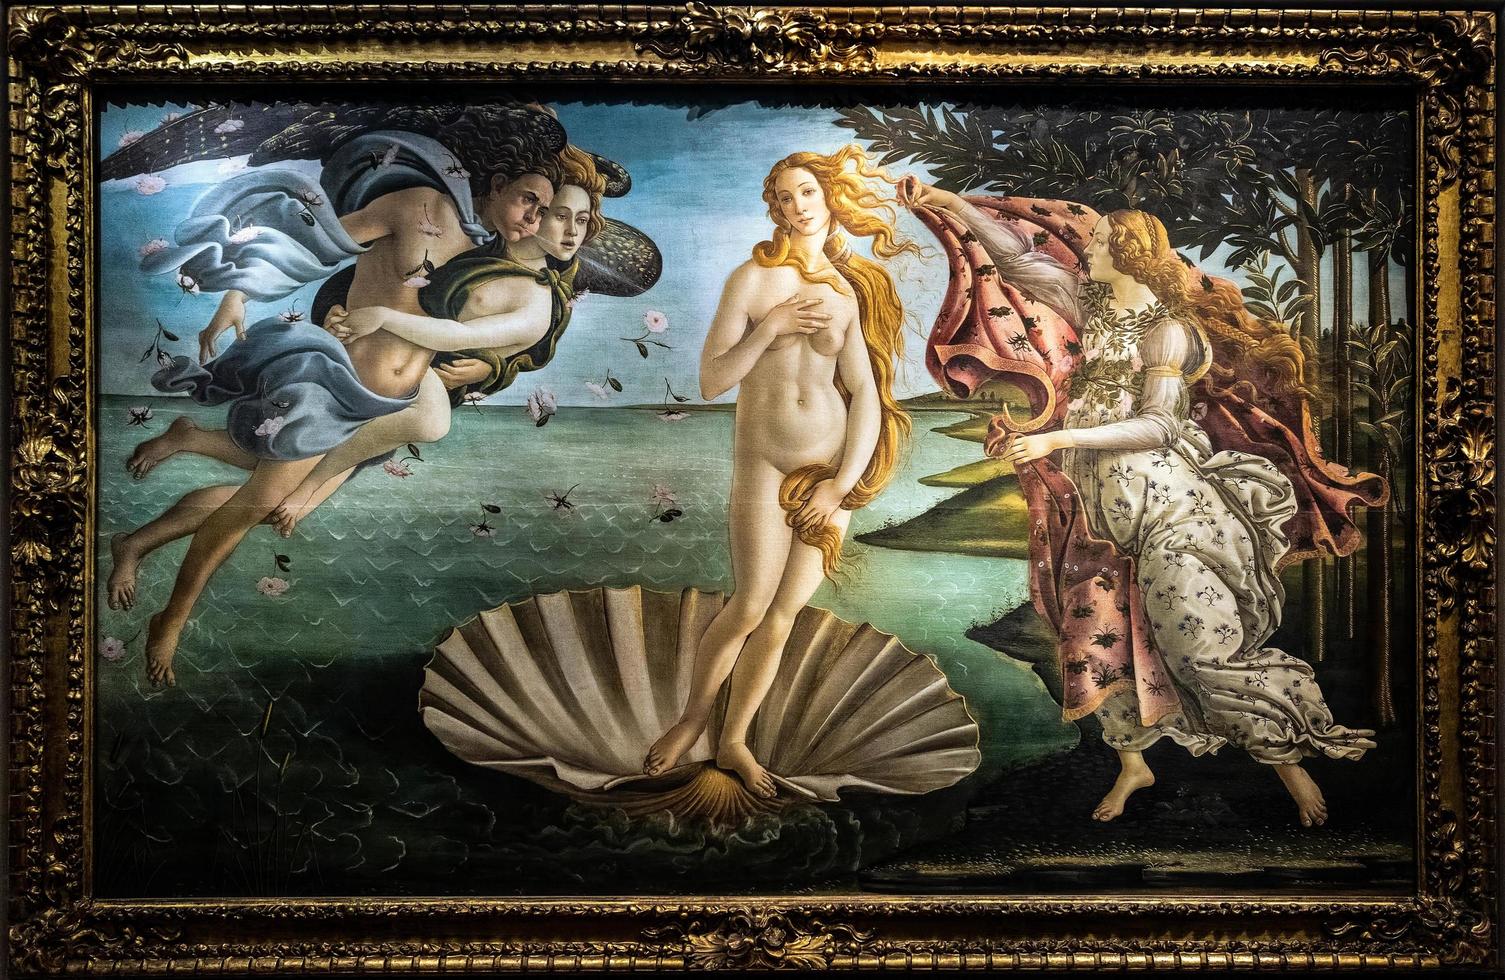 firenze, toscana, italia, 2019. la nascita della pittura di venere nella galleria degli uffizi foto